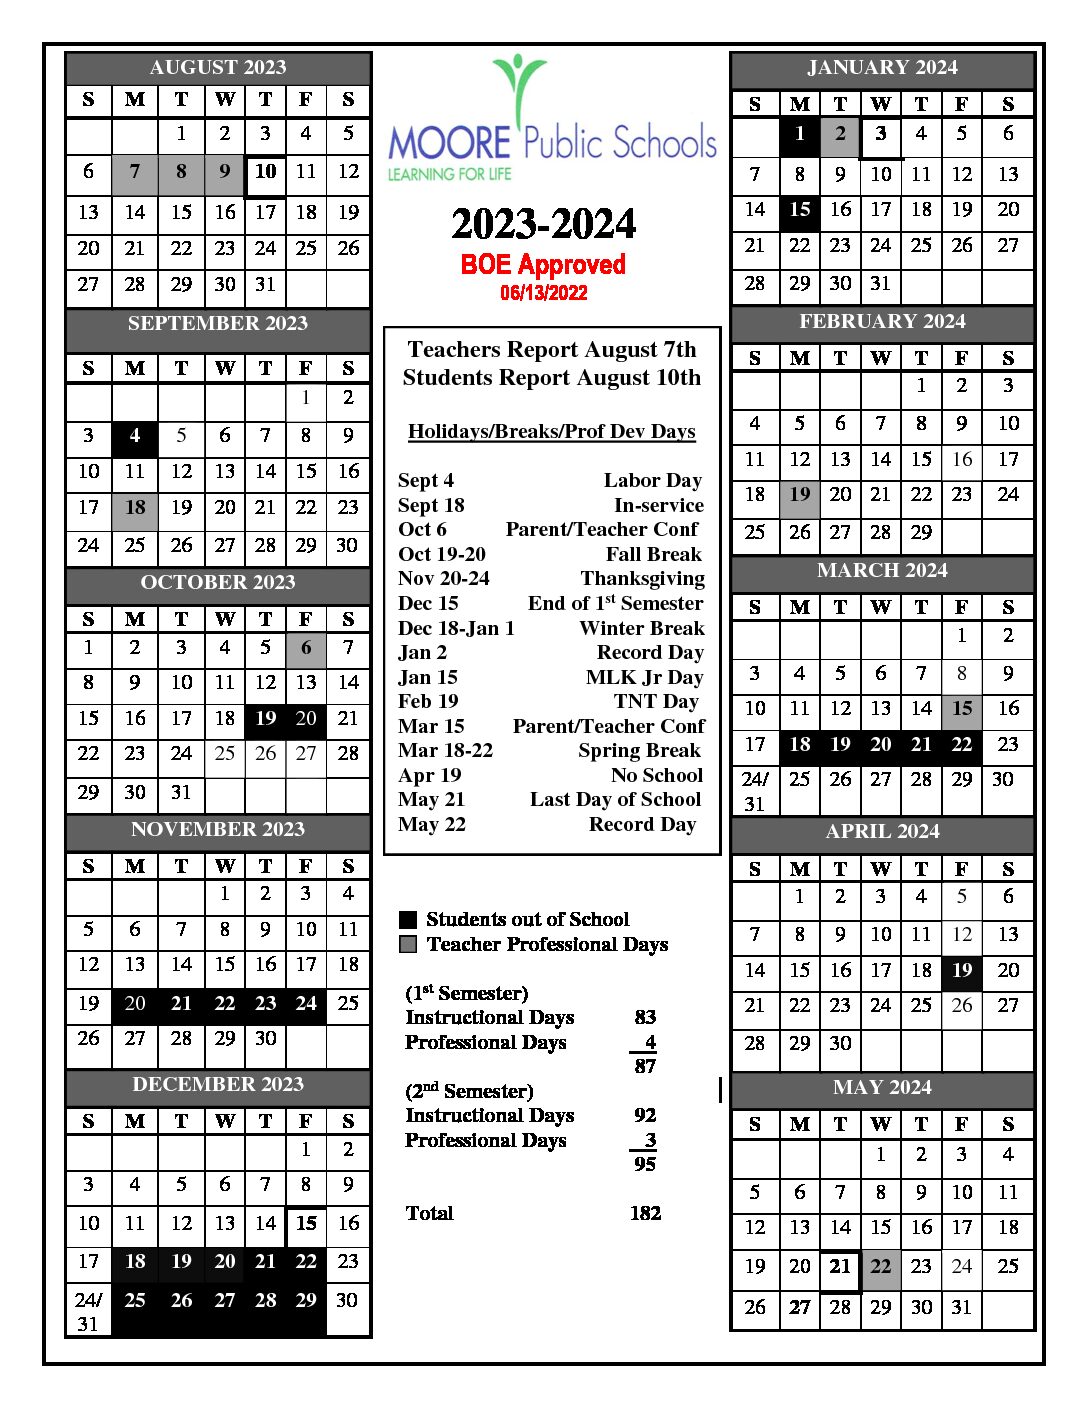 Moore Public Schools Calendar 2023 2024 in PDF